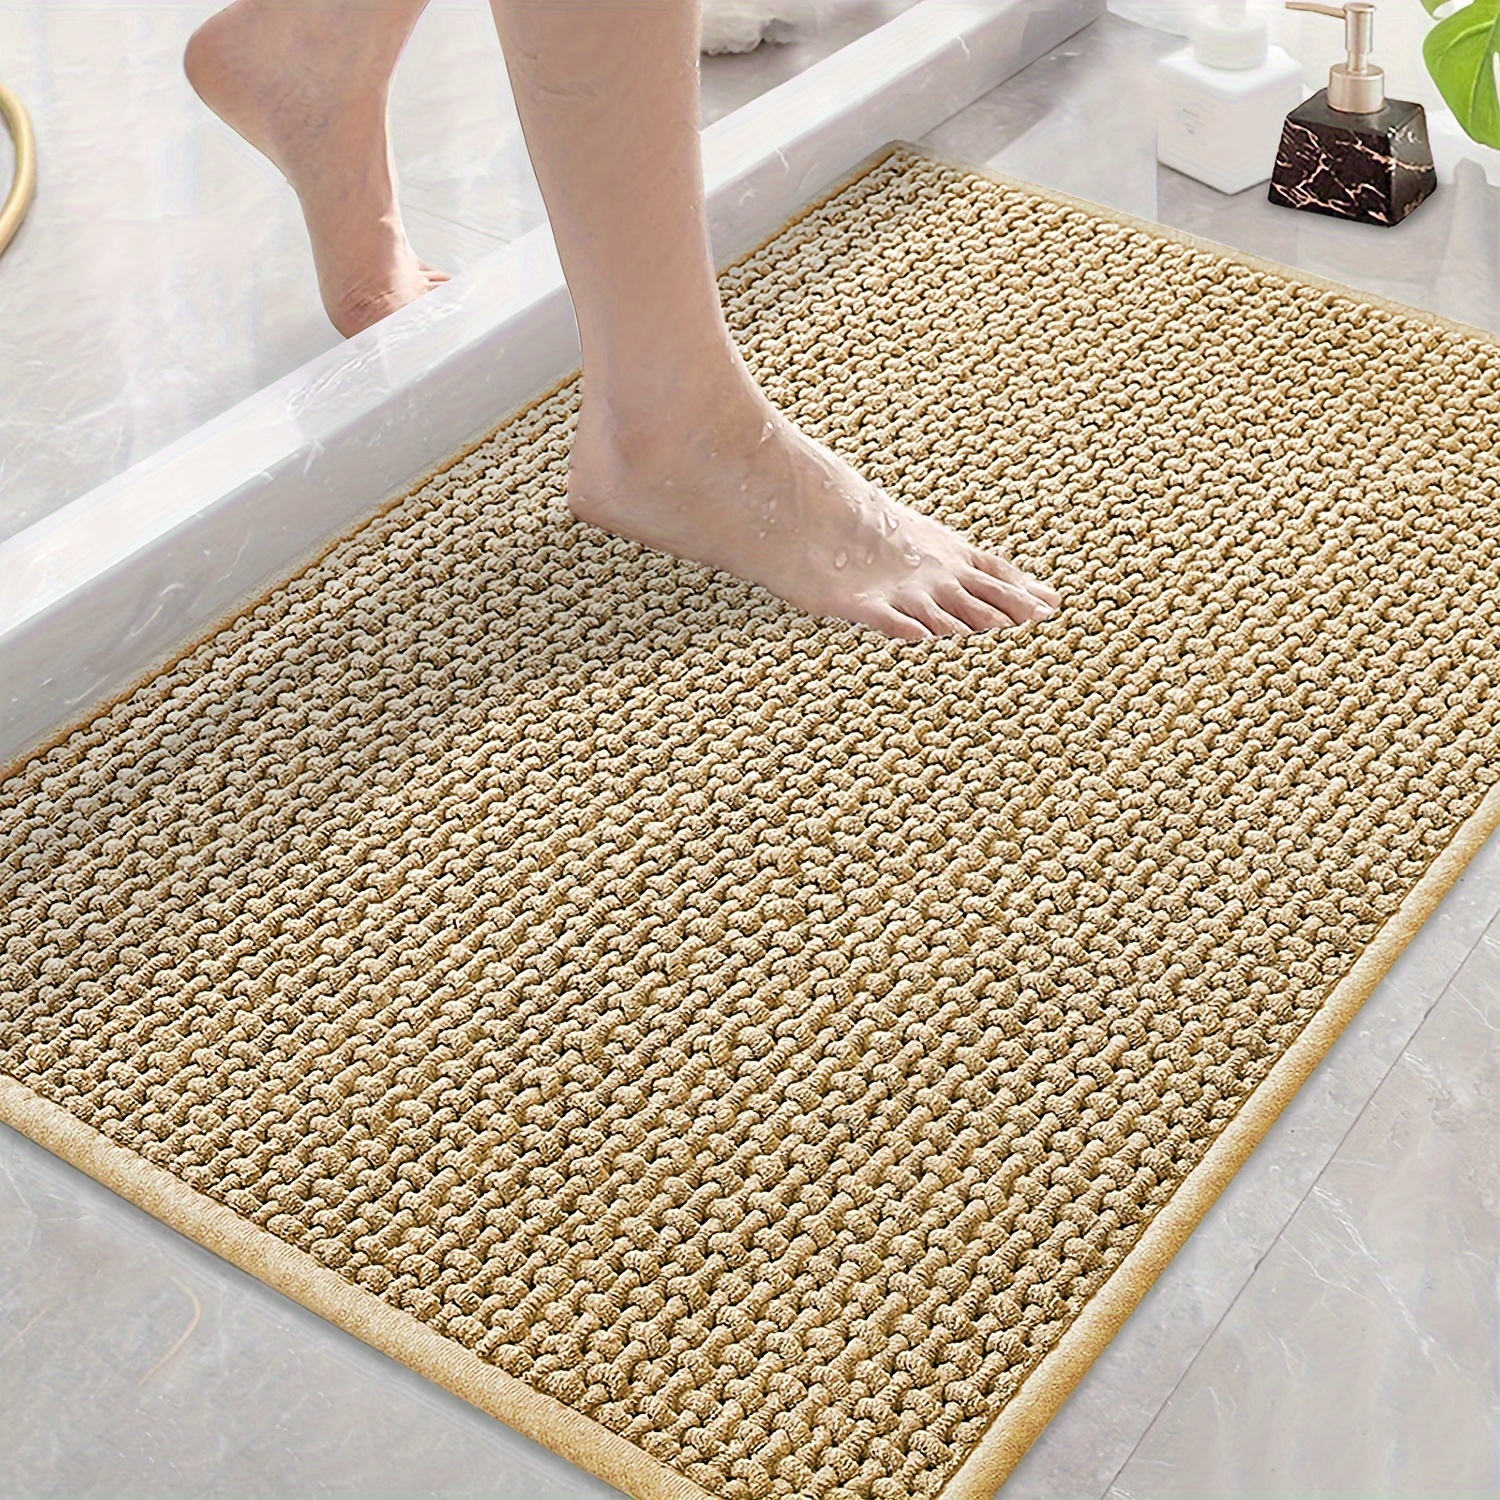 Lujosa alfombra de baño de bambú natural y toalla de mano de fibra de bambú  para una sensación y apariencia de spa. -  México